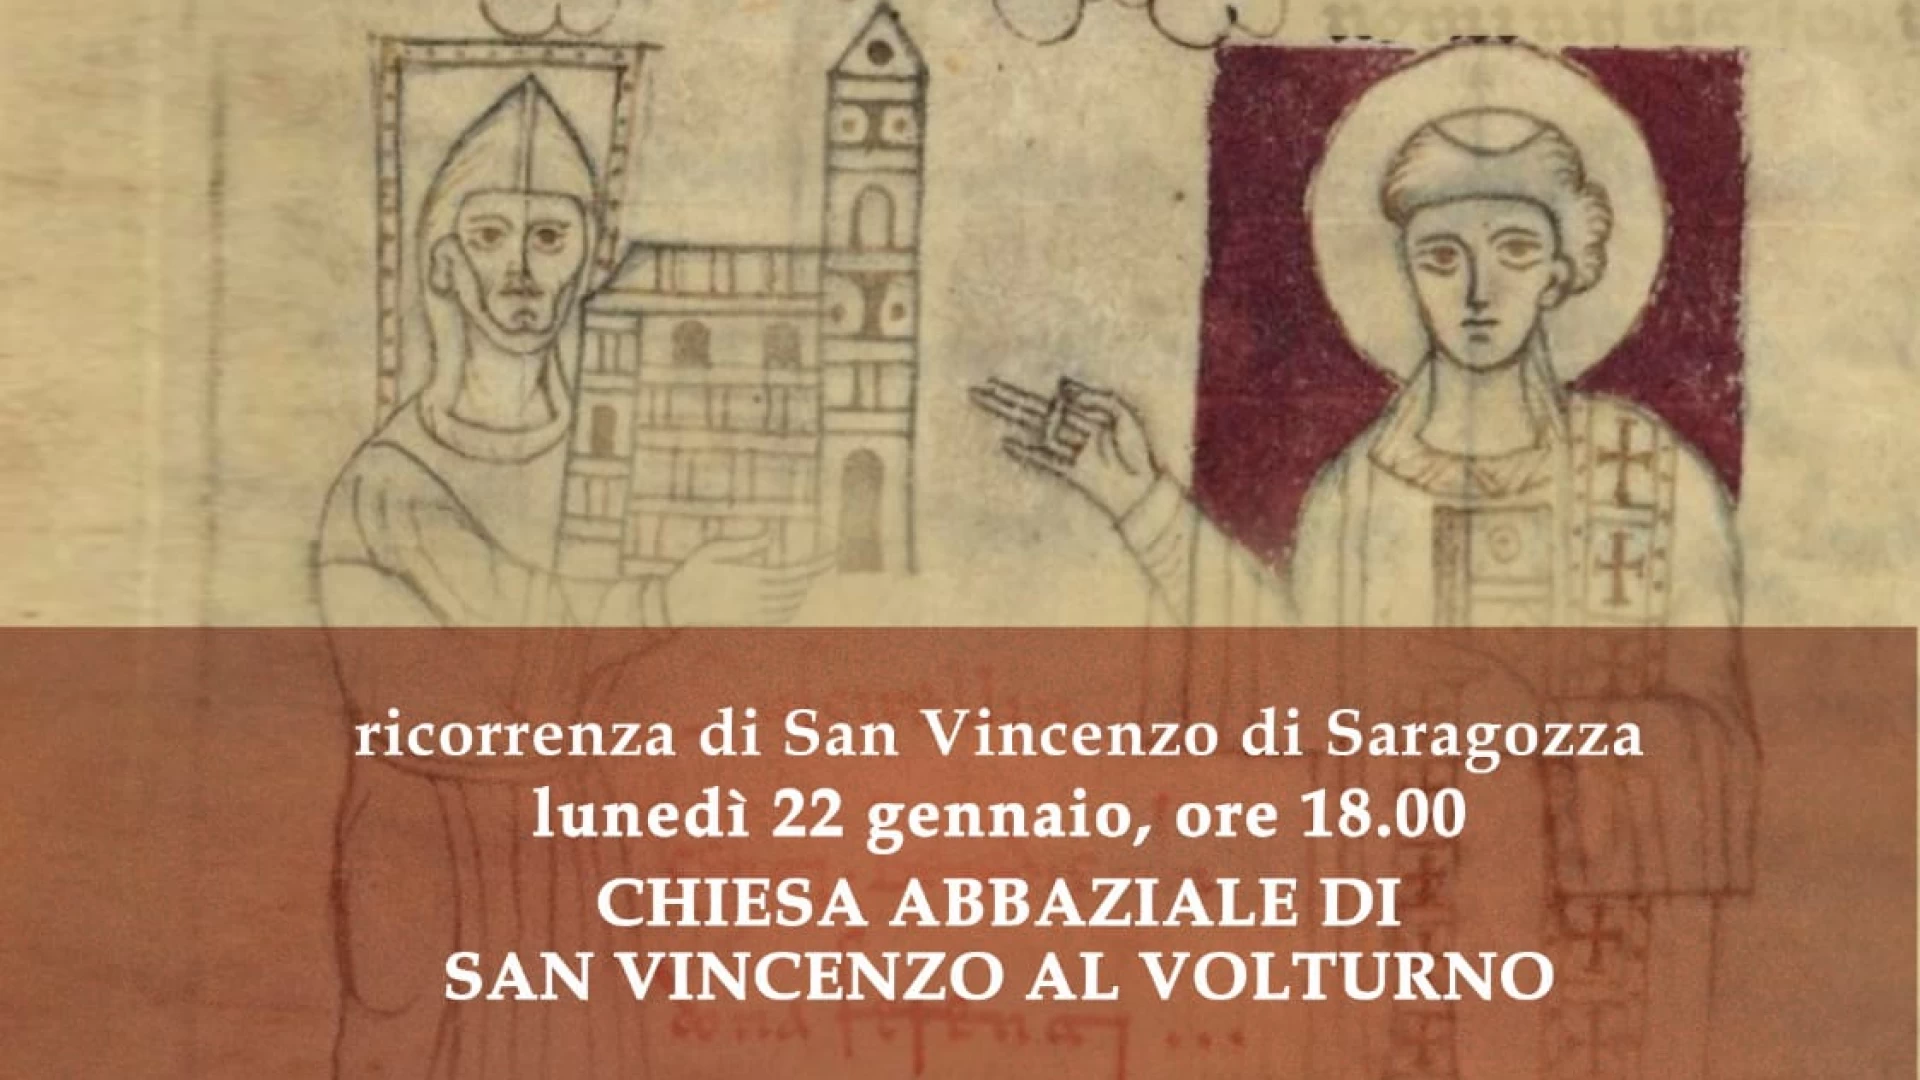 Lunedì 22 gennaio la ricorrenza di San Vincenzo Martire. Presso l’abbazia santa messa con l’Abate Luca Fallica.